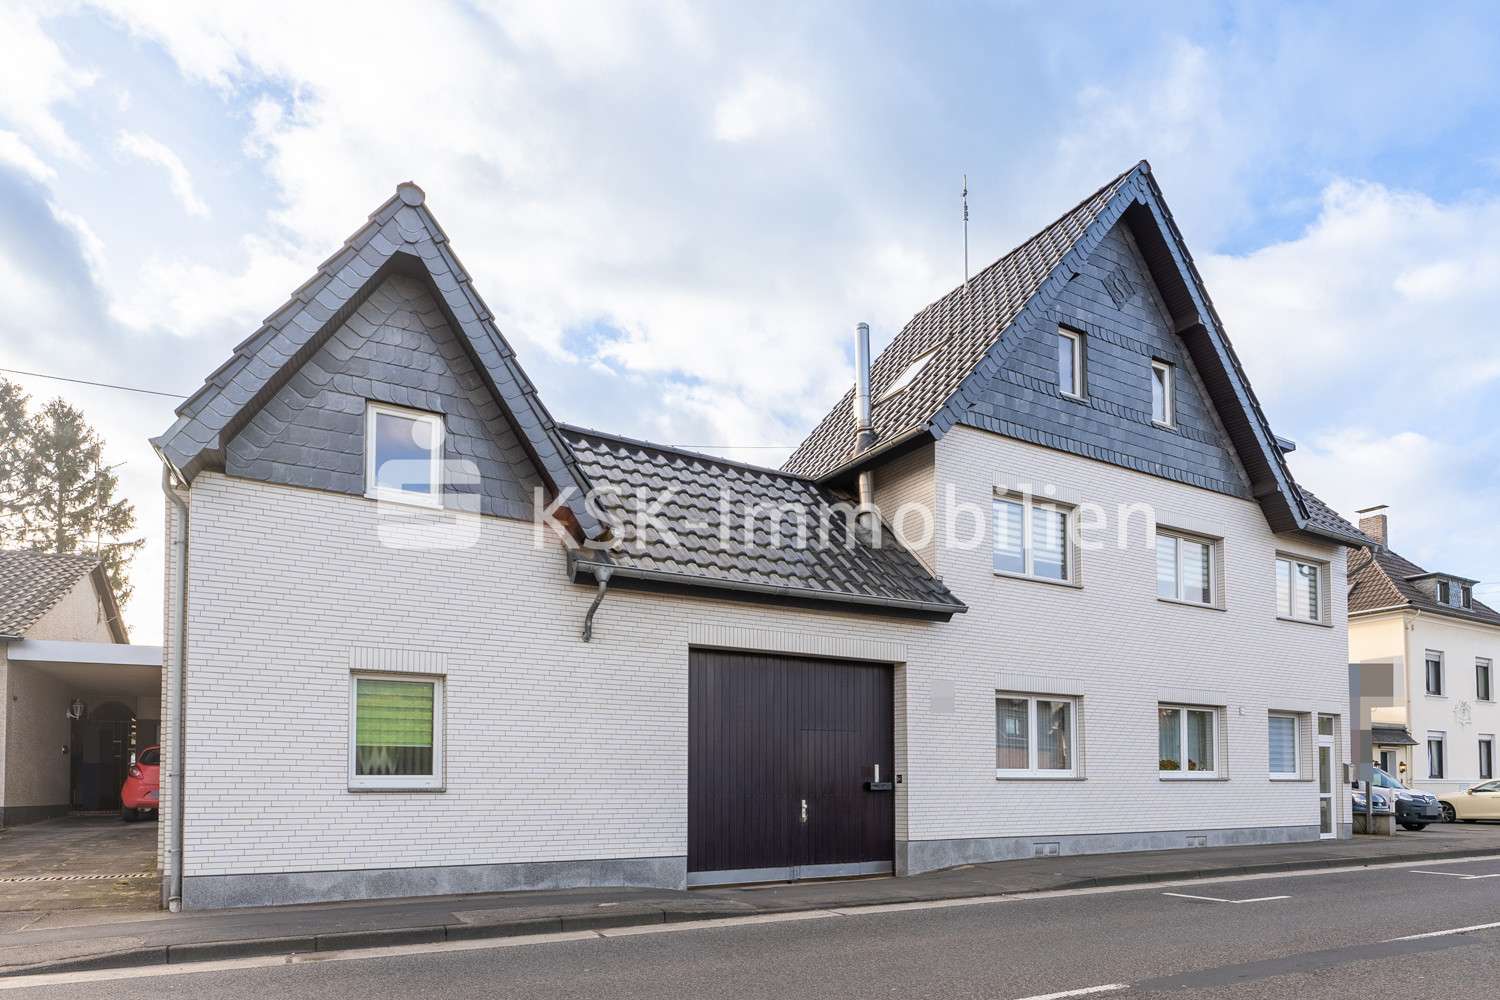 105397 Außenansicht - Maisonette-Wohnung in 53332 Bornheim mit 187m² günstig kaufen